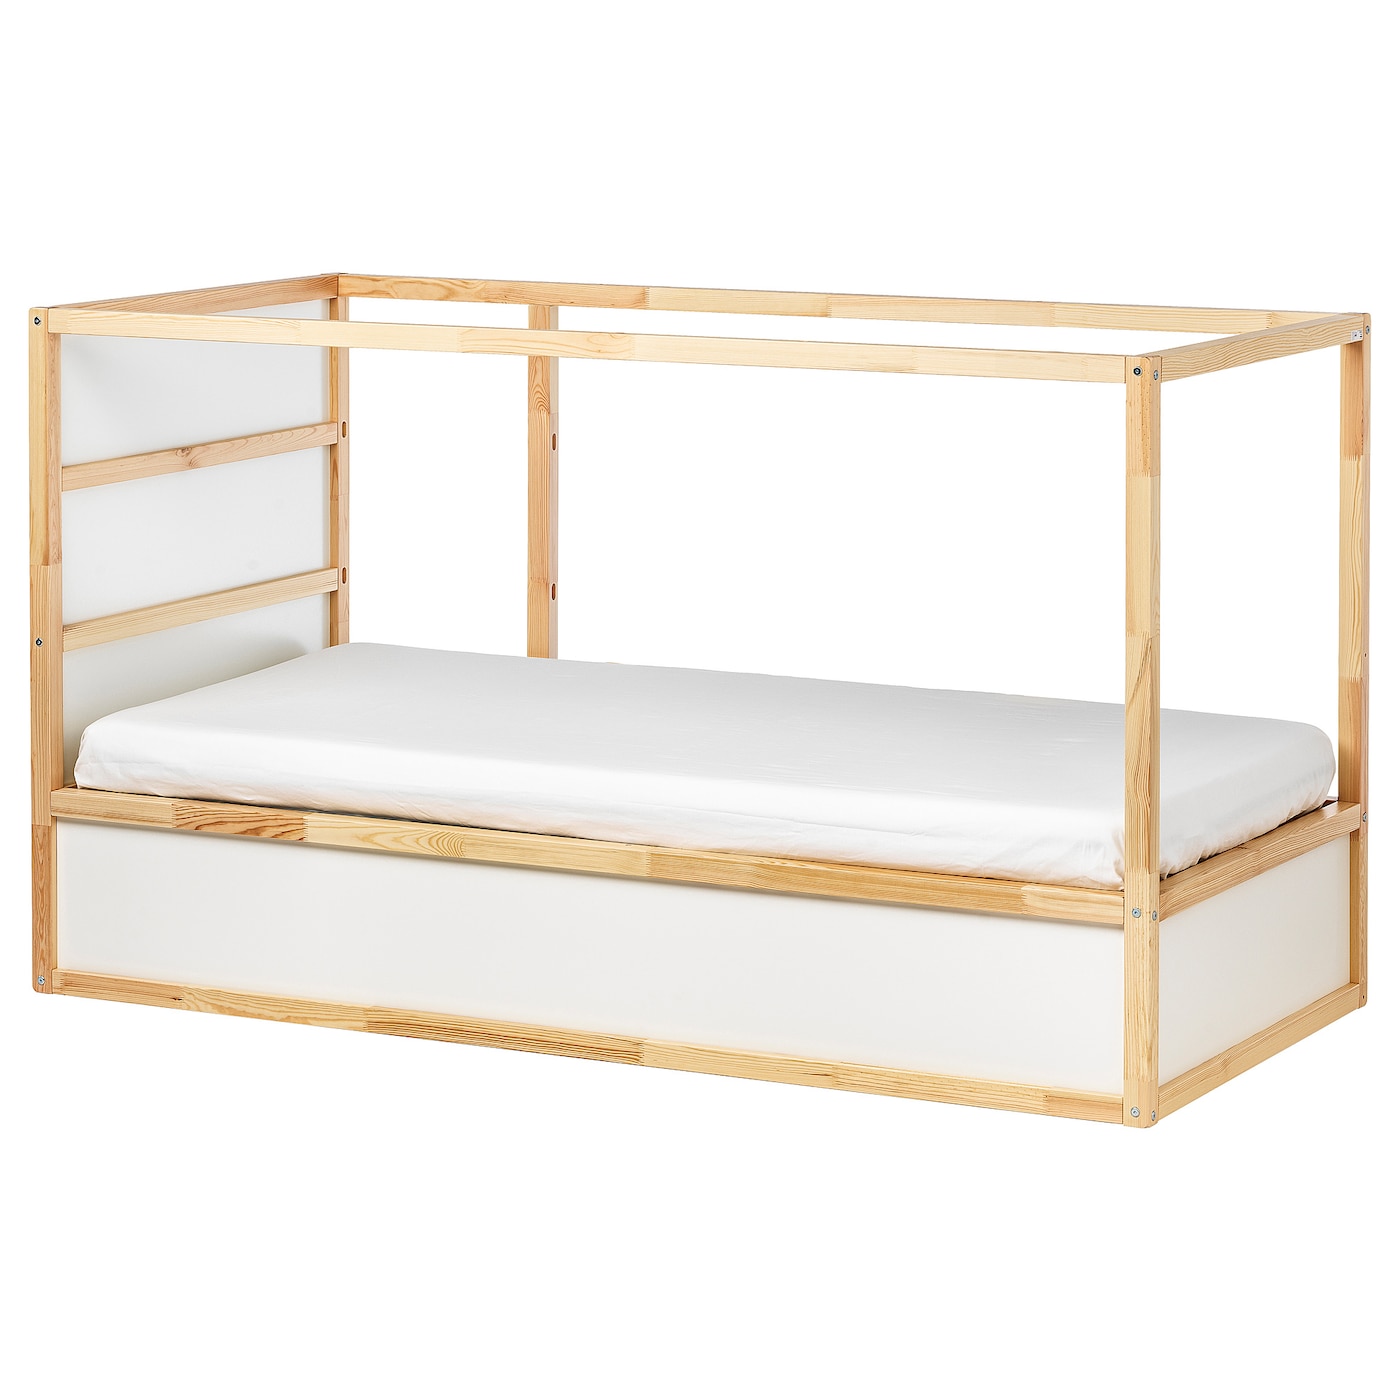 Кровать одноярусная - IKEA KURA/КЮРА ИКЕА, 90x200 см, белый/коричневый